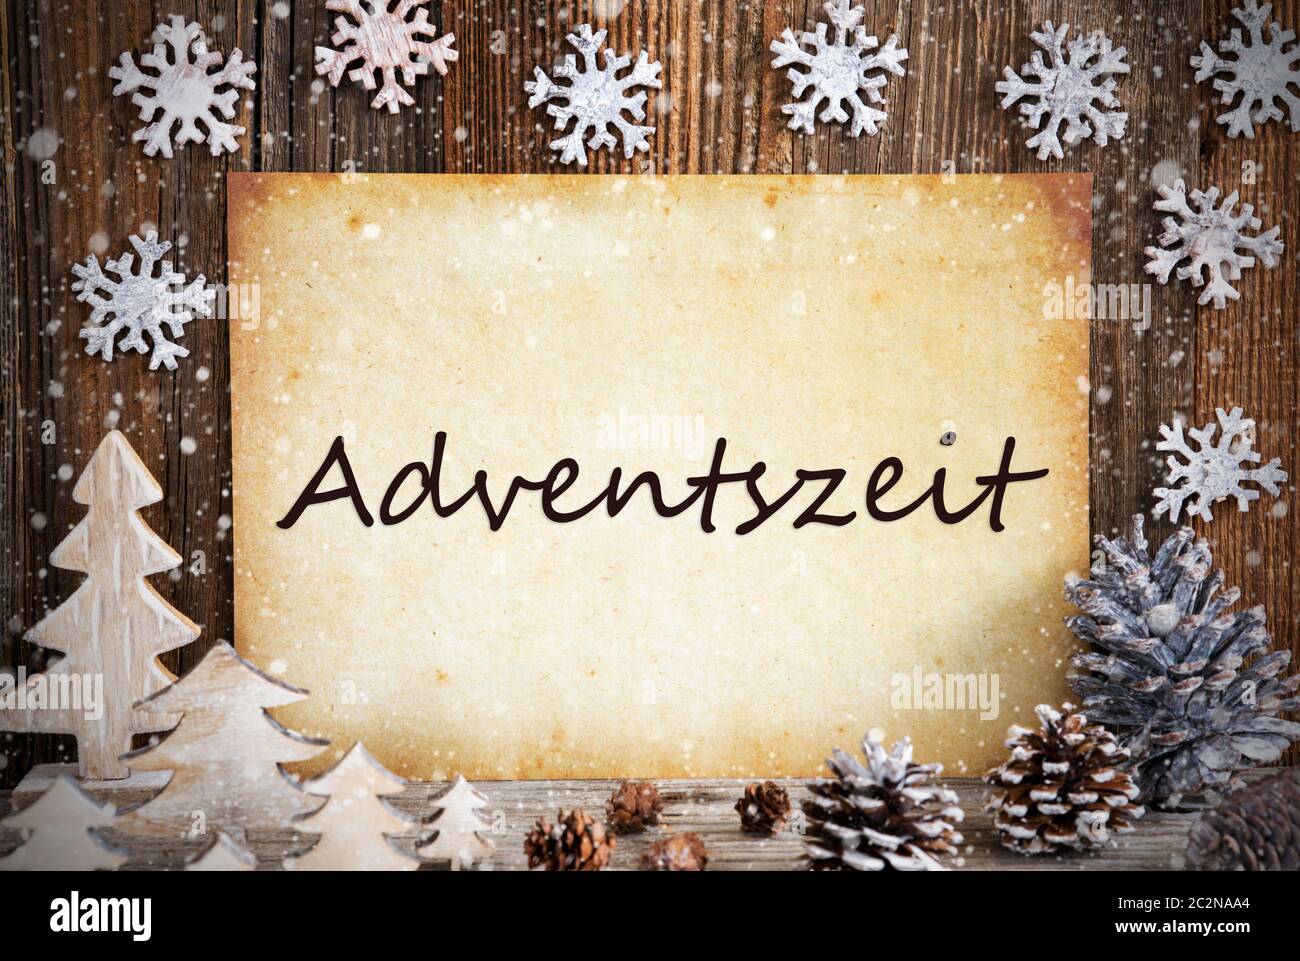 Altes Papier mit deutschem Text bedeutet Adventszeit Adventszeit. Weihnachtsdekoration wie Baum, Tannenzapfen und Schnee. Braun Holz- Hintergrund Stockfoto